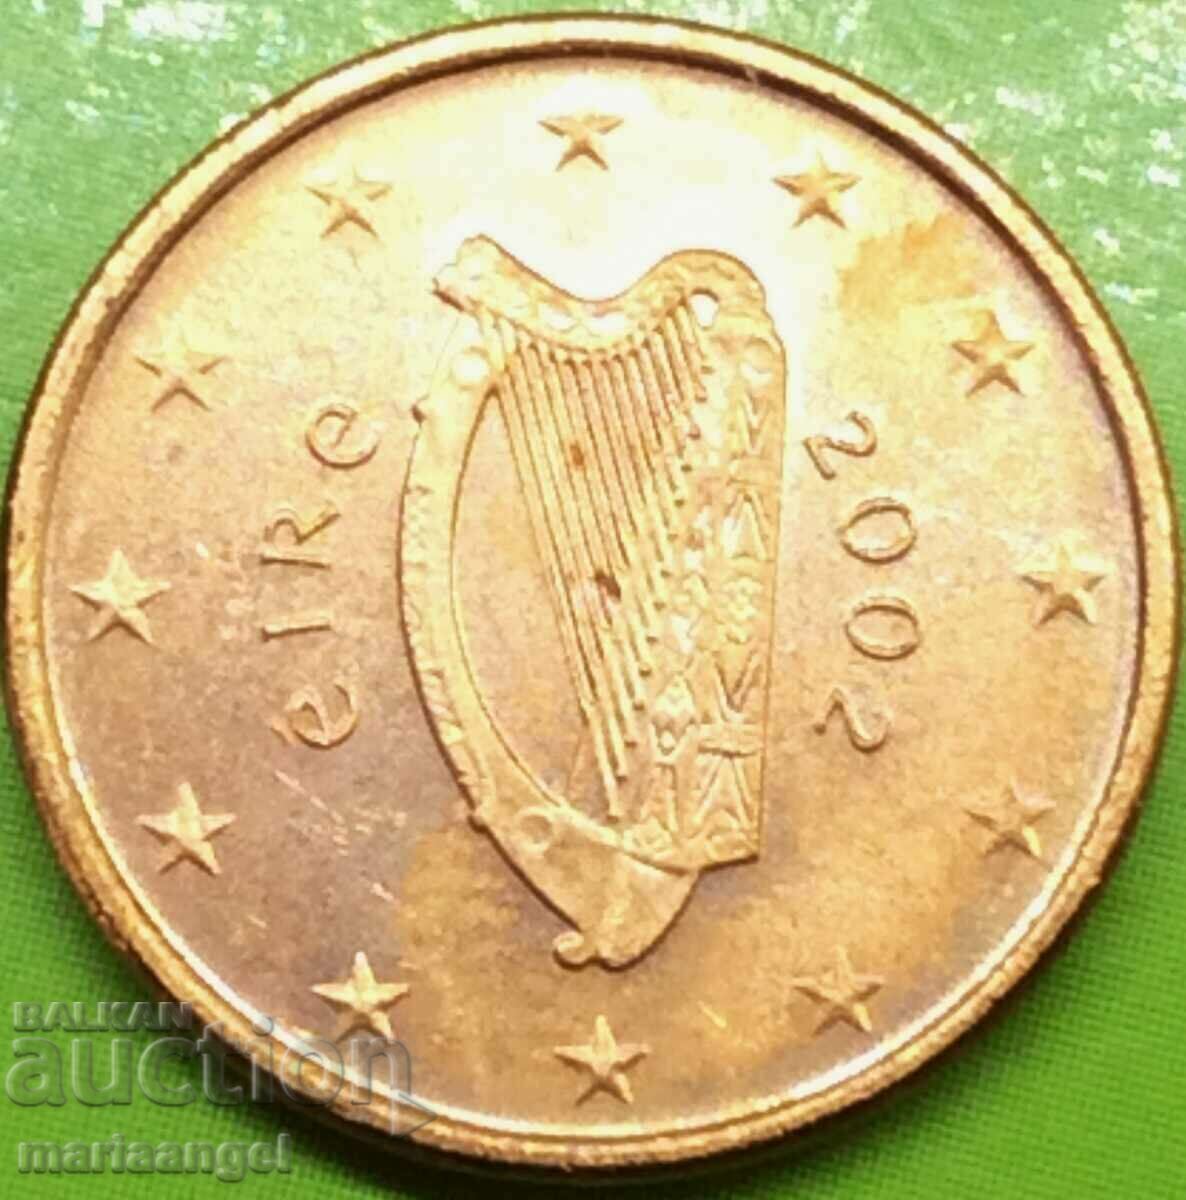 Irlanda 1 cent de euro 2002 - rar